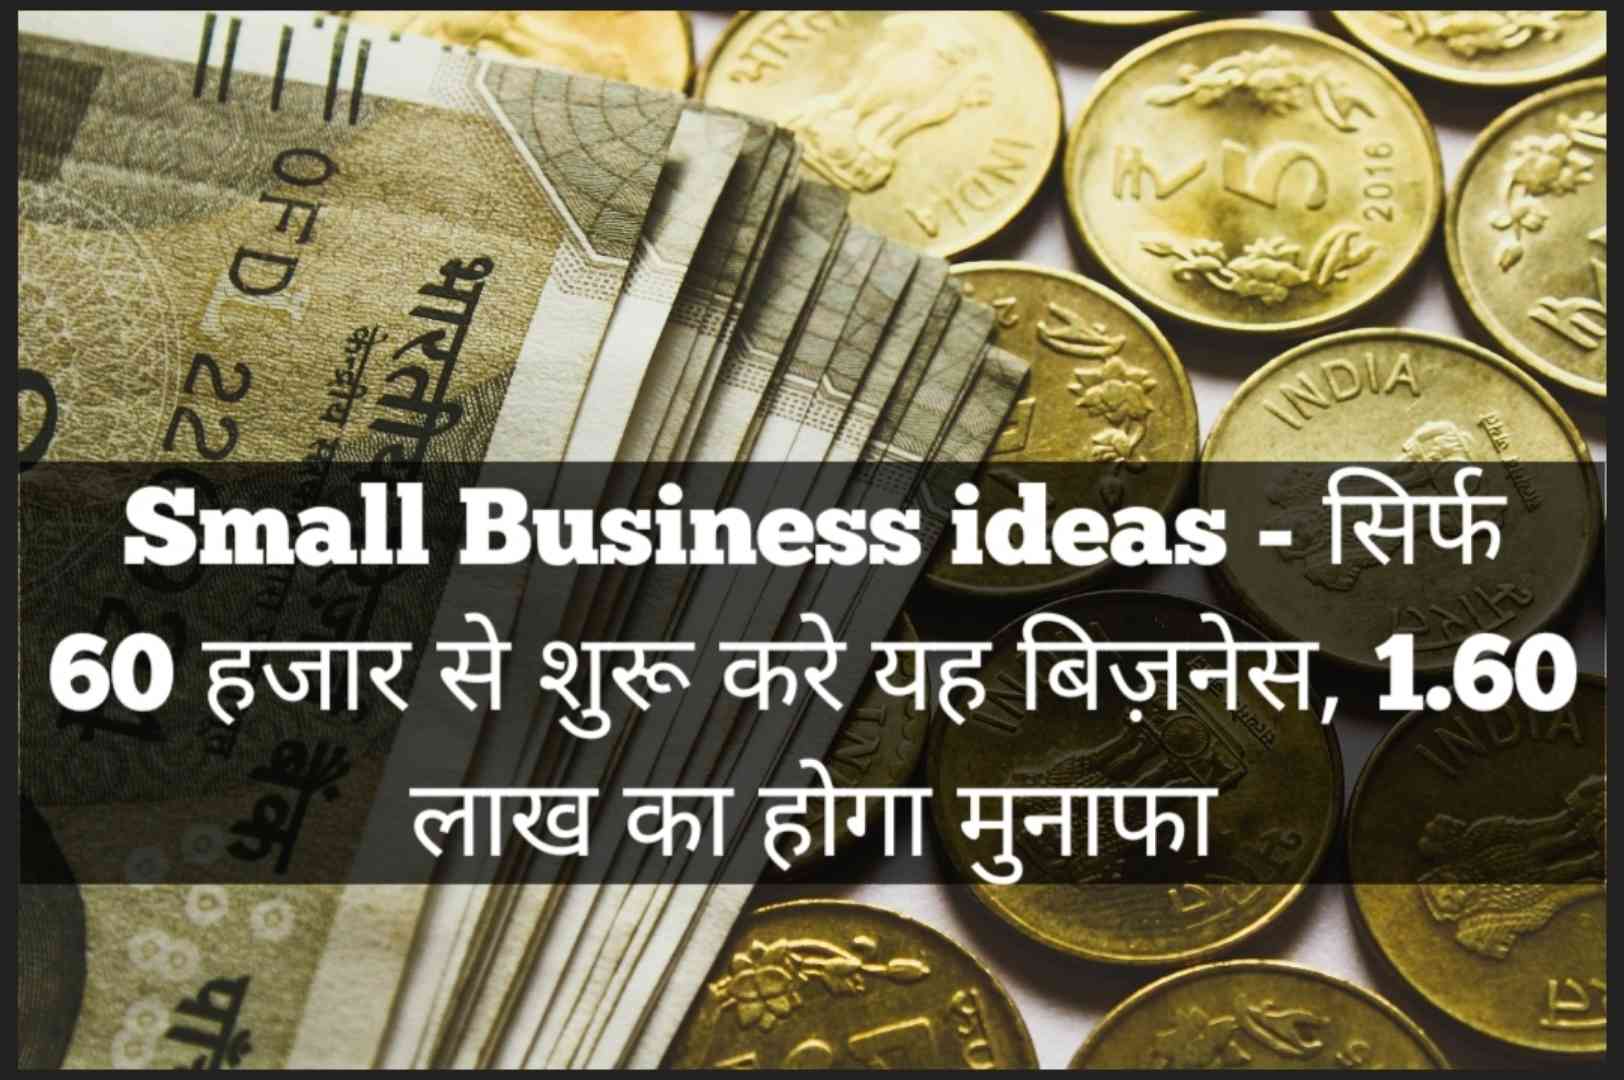 Small Business ideas - सिर्फ 60 हजार से शुरू करे यह बिज़नेस, 1.60 लाख का होगा मुनाफा